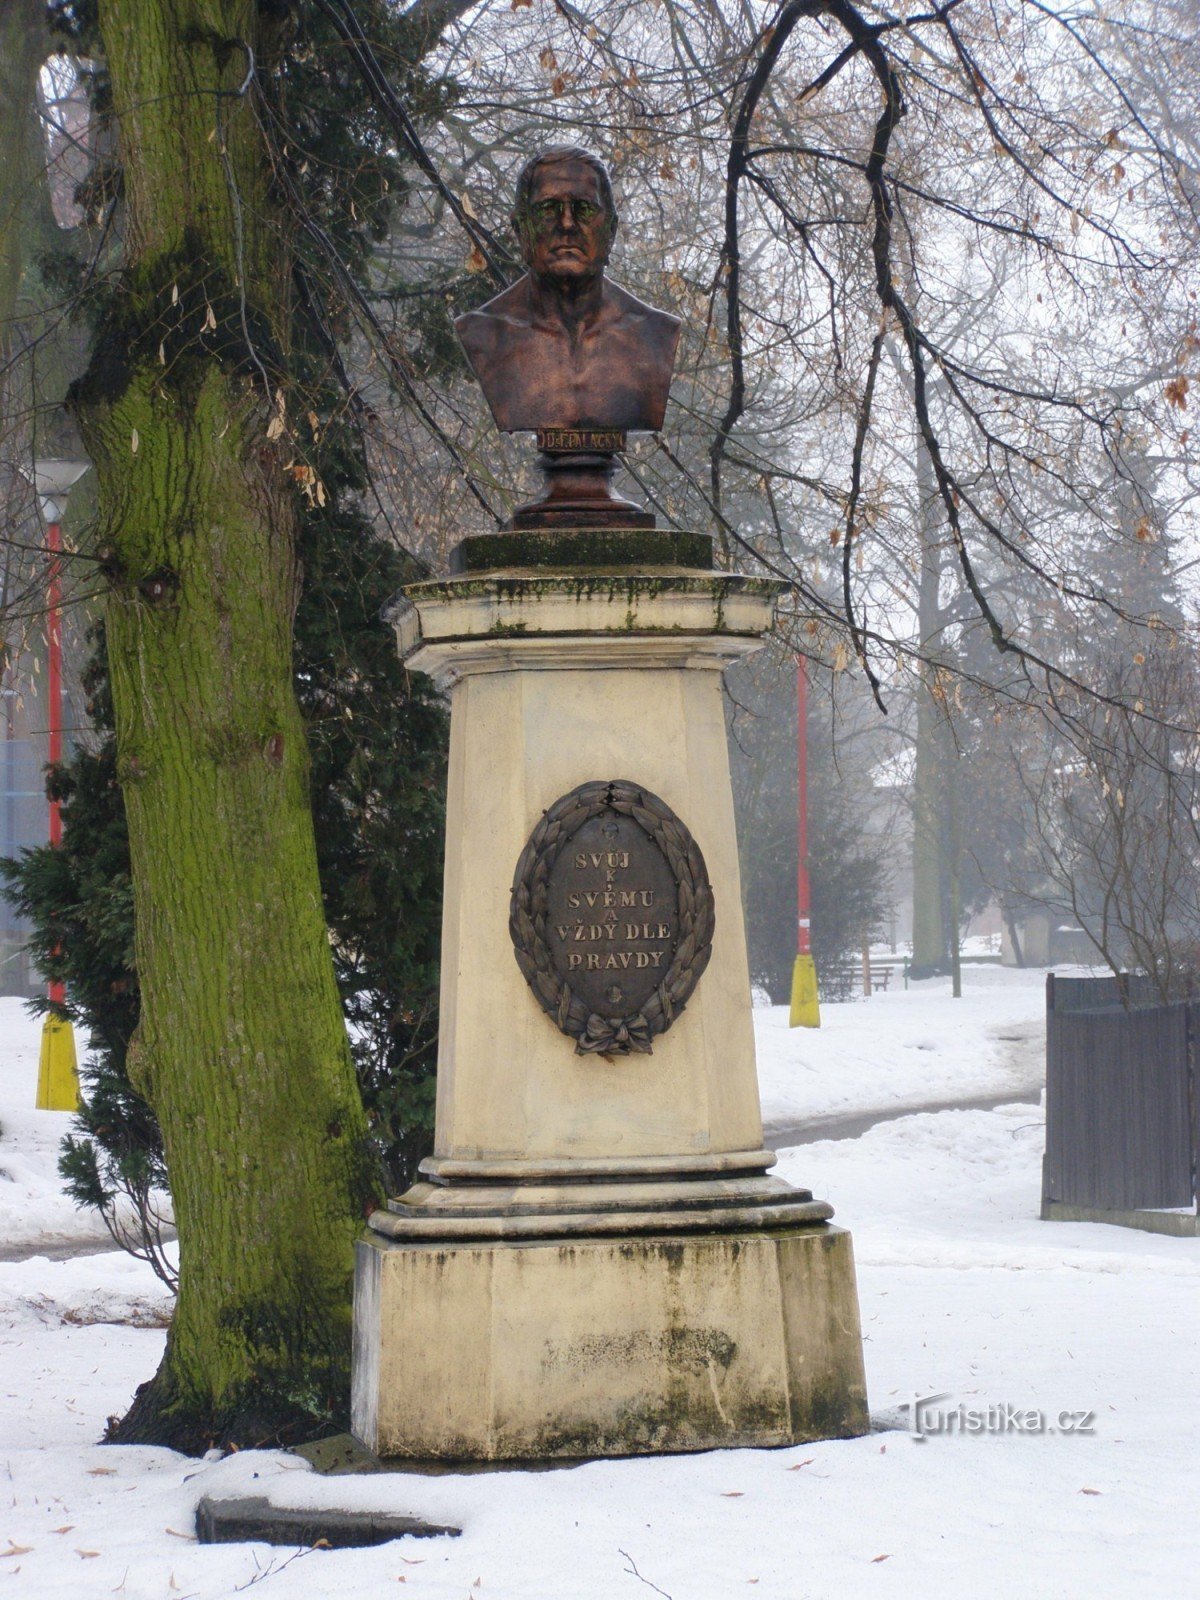 Nový Bydžov - tượng đài František Palacký